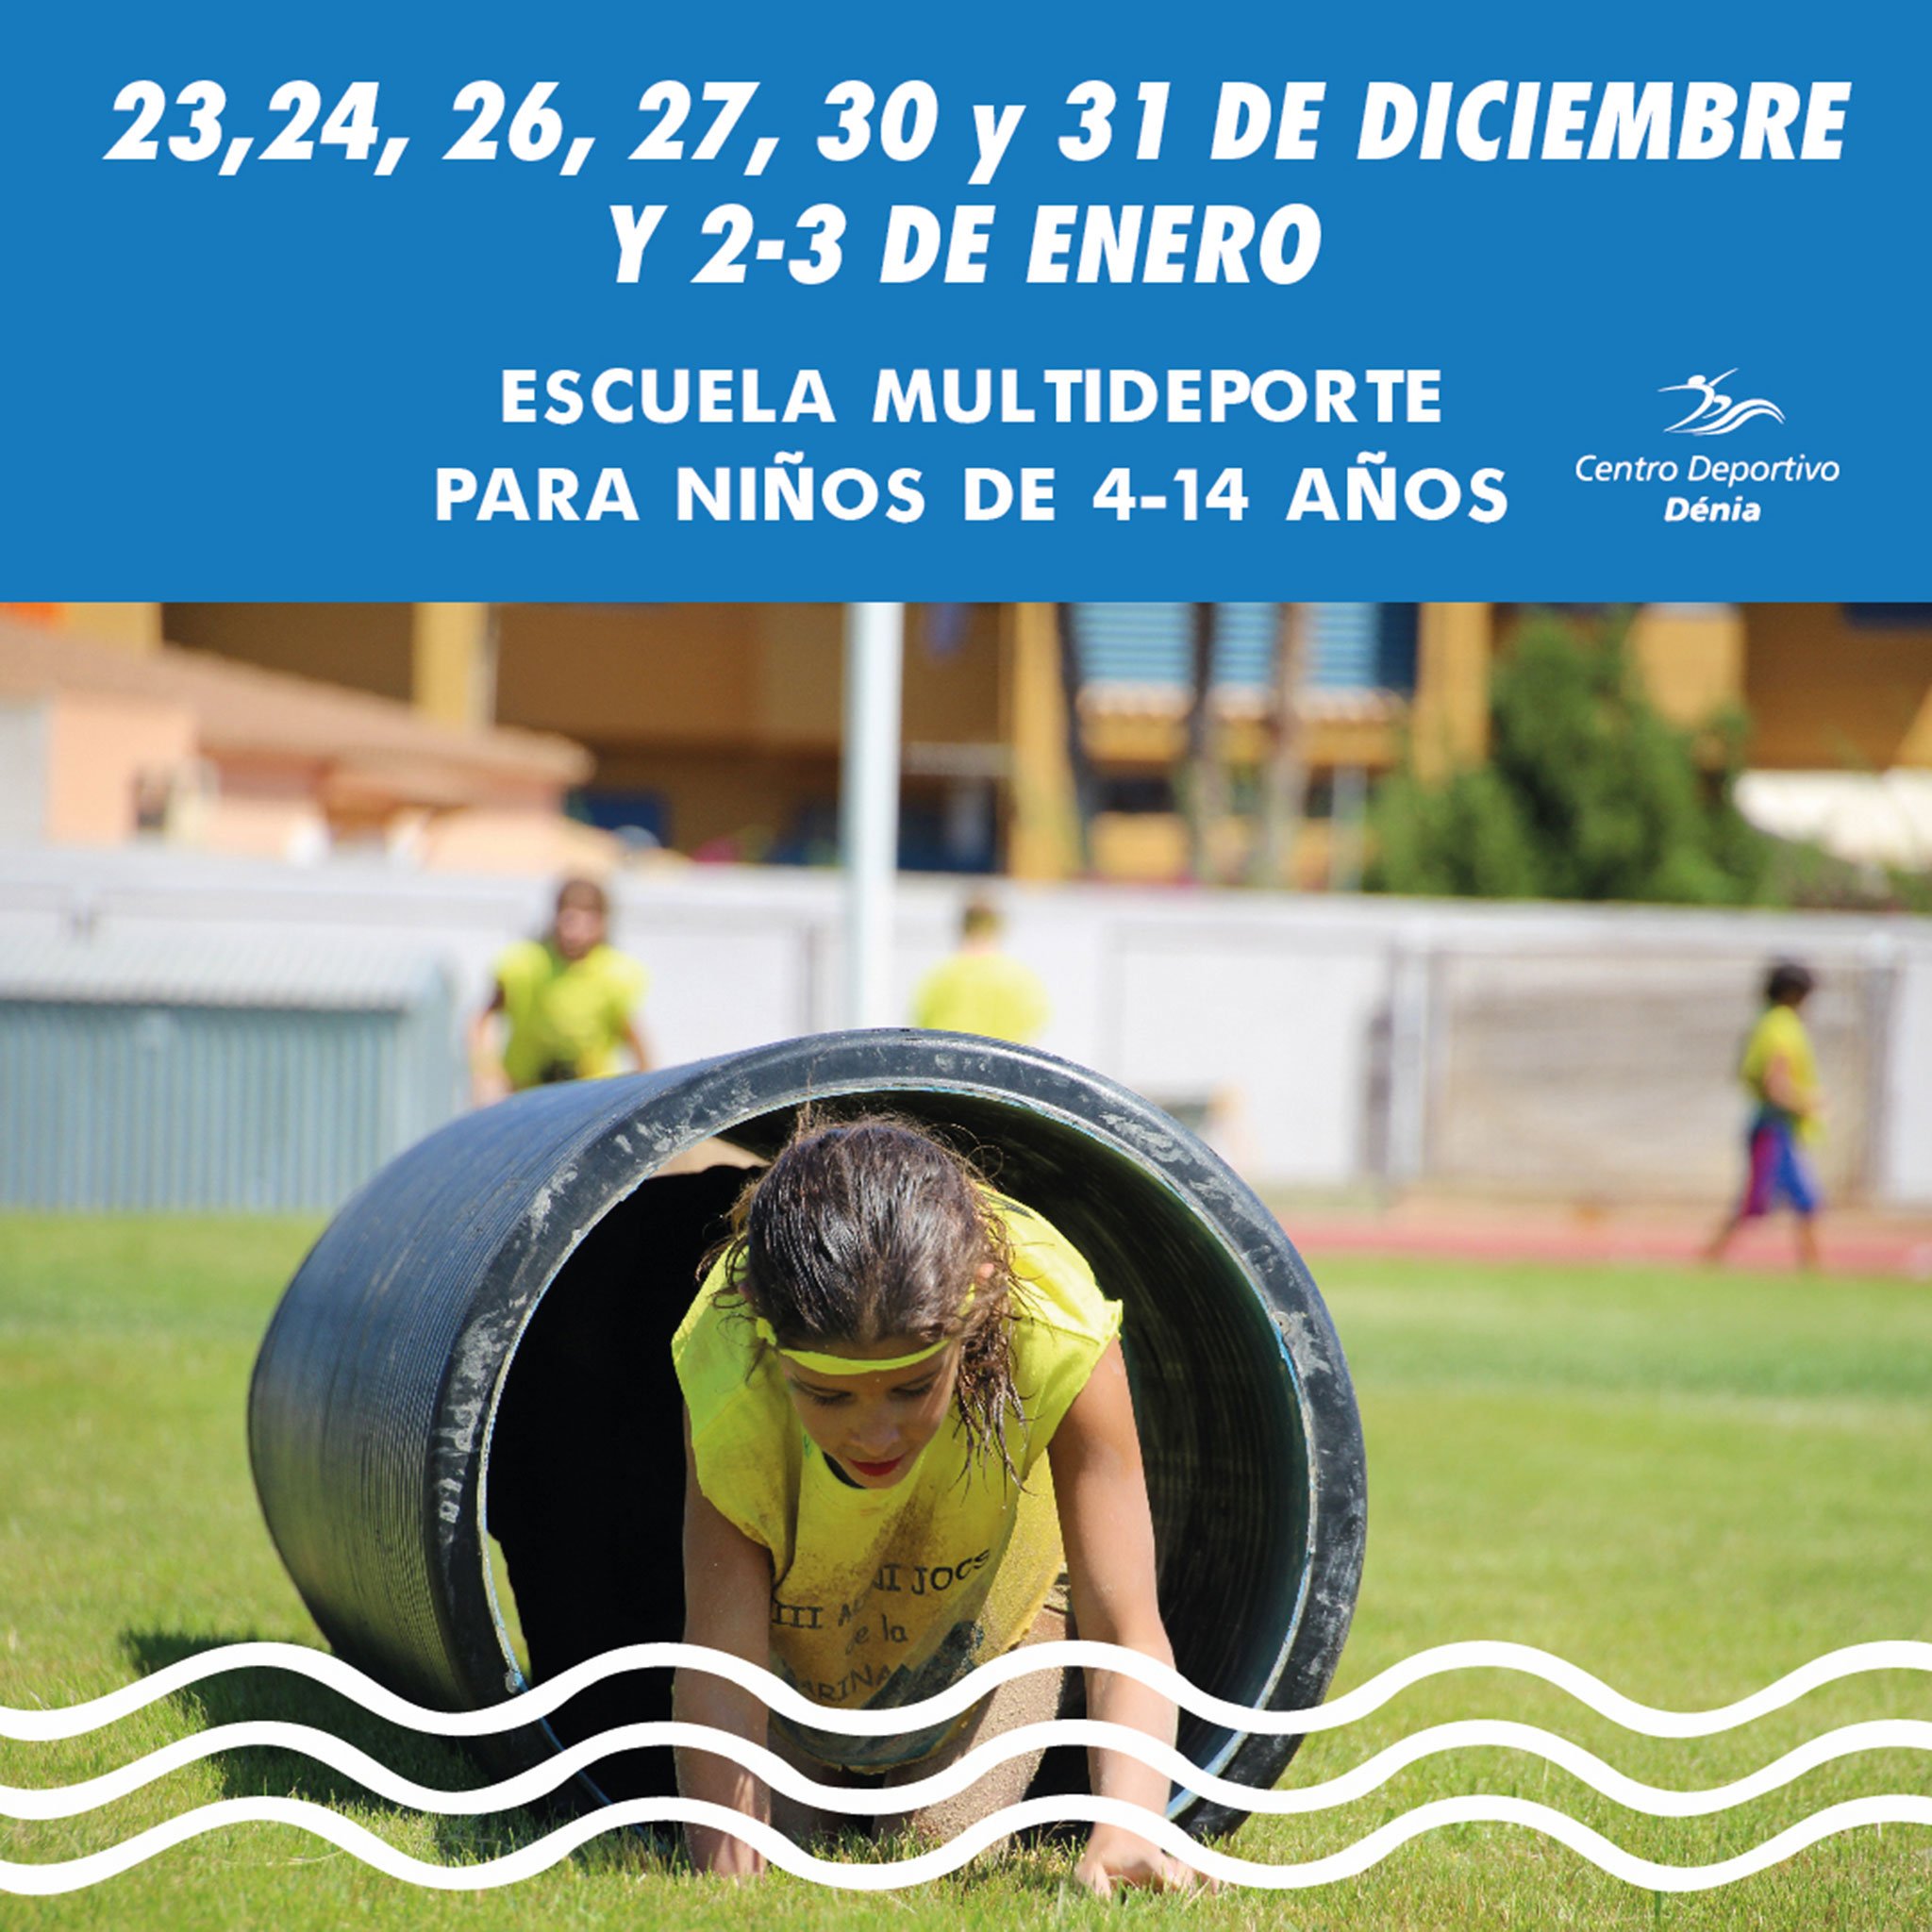 Cartel informativo de la Escuela Multideporte de Centro Deportivo Dénia para esta Navidad